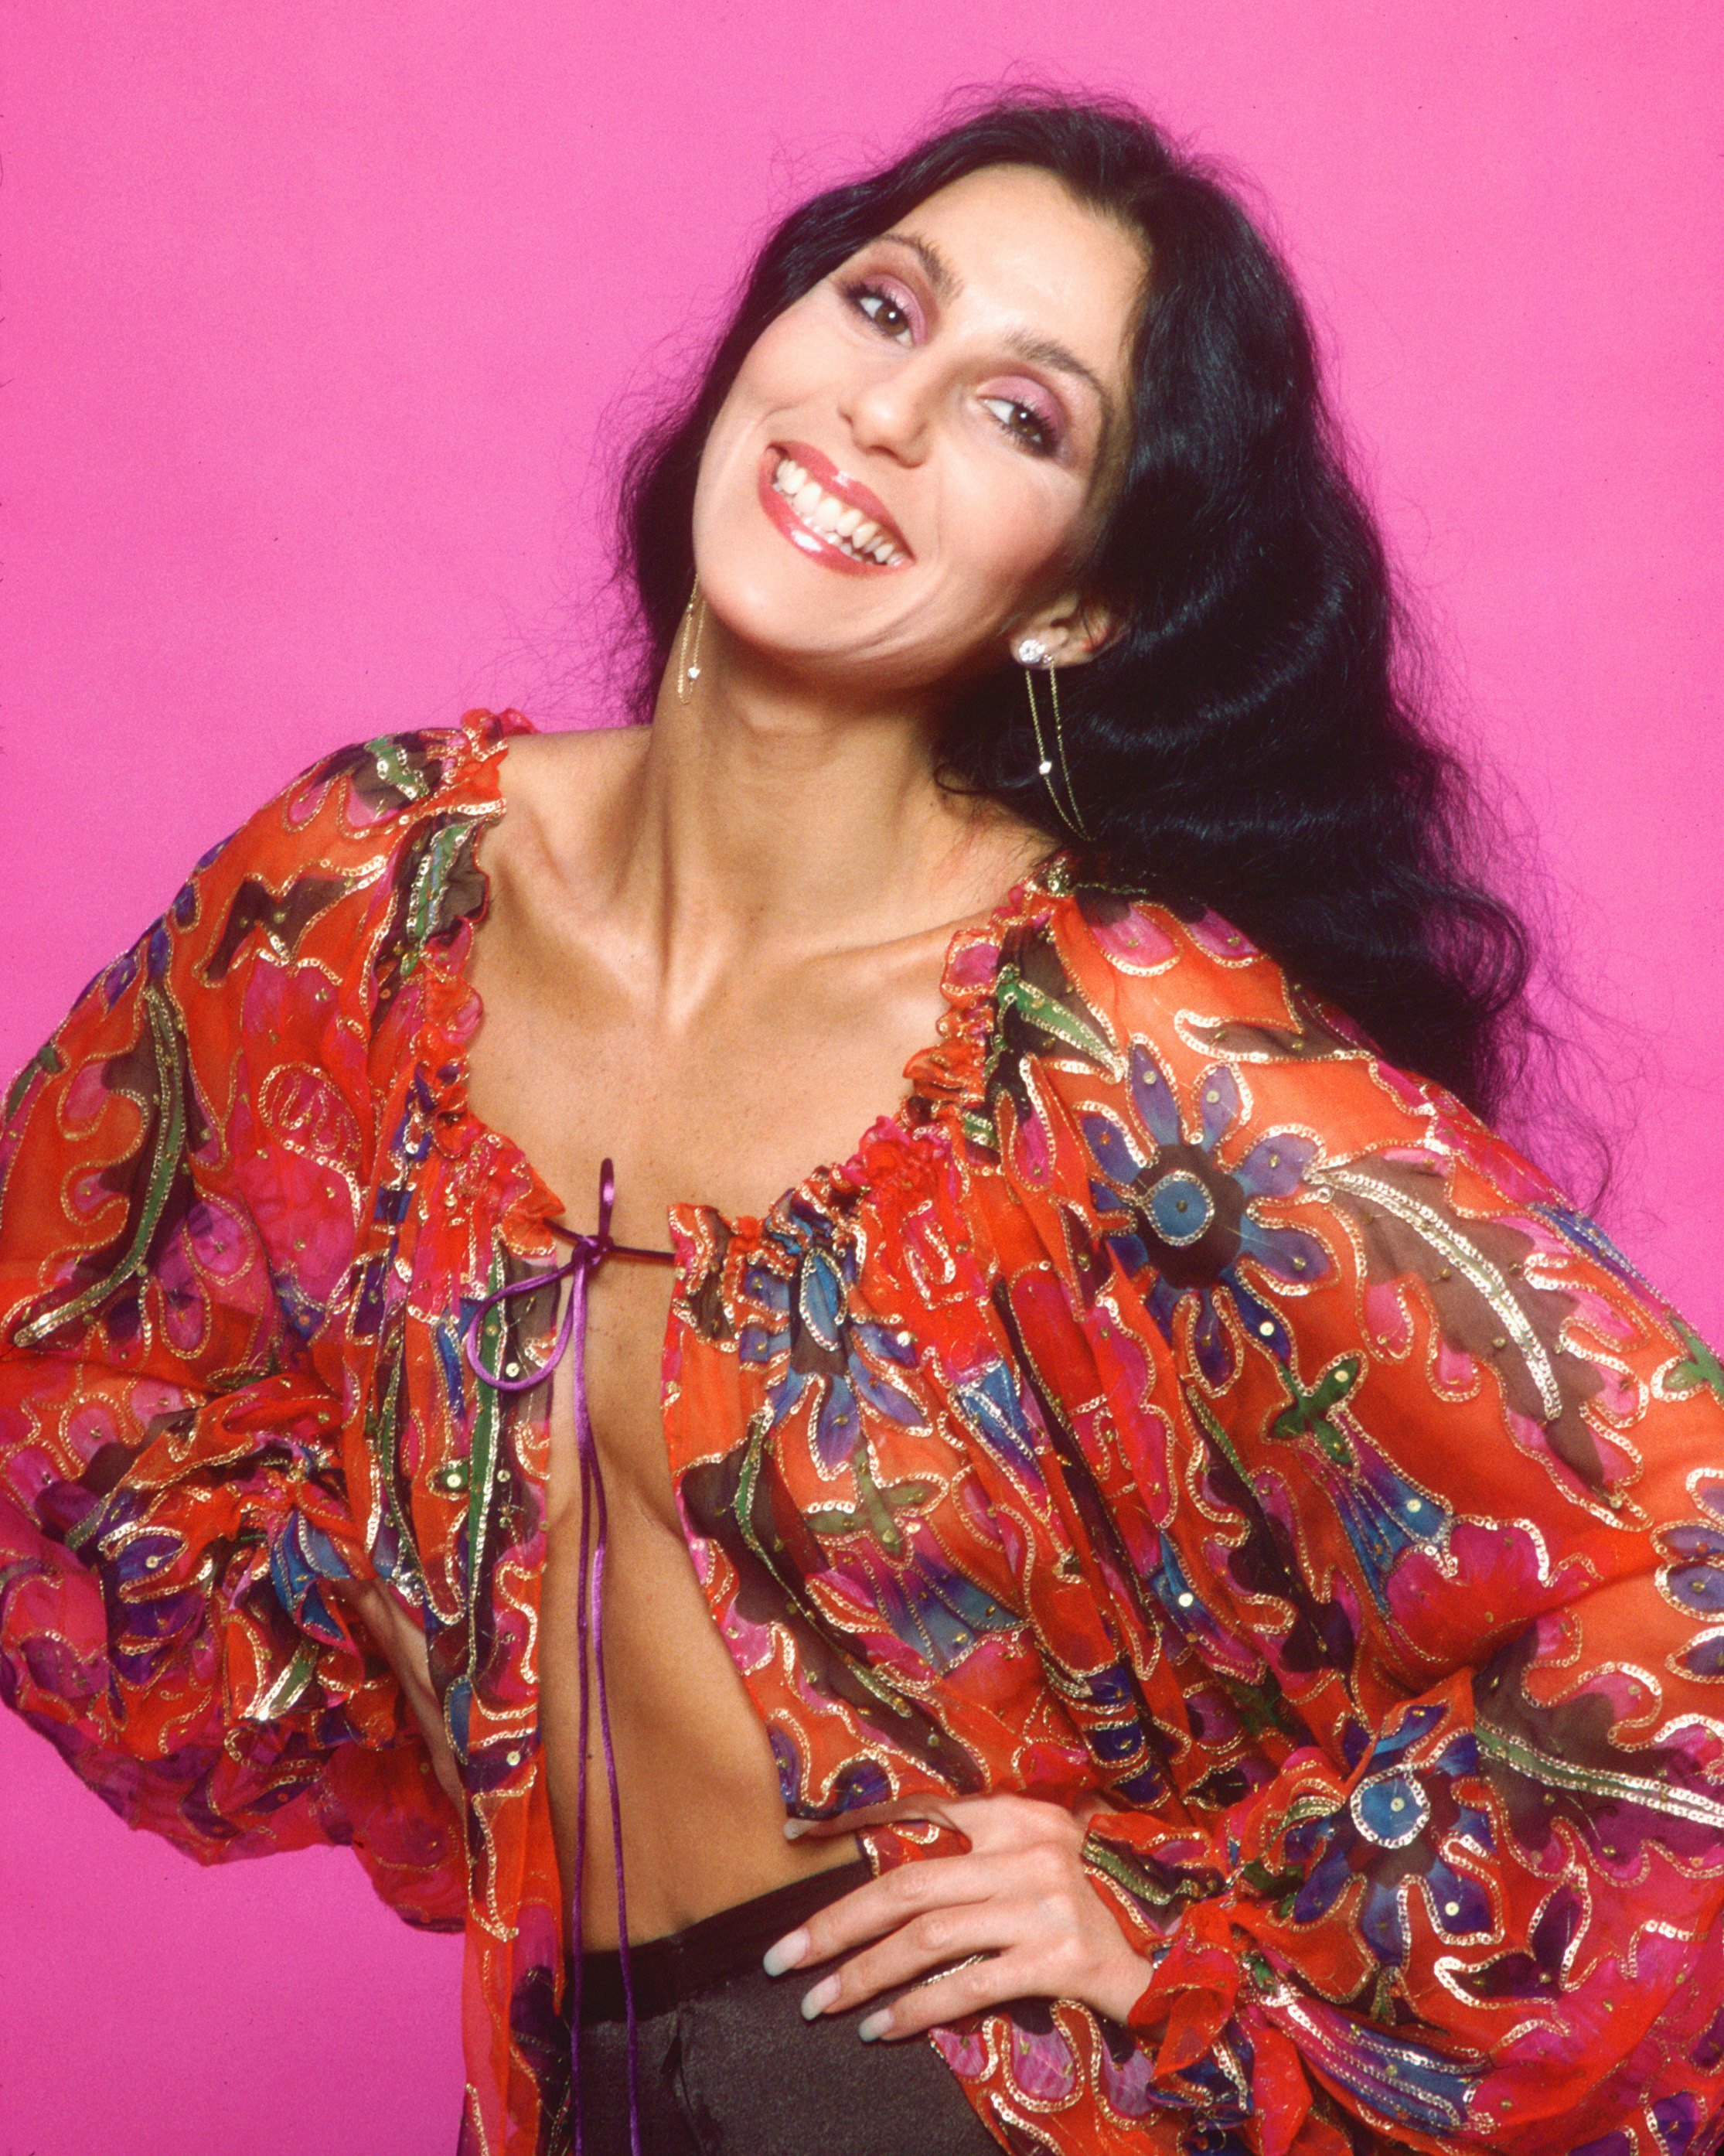 Cher à Los Angeles, Californie, le 21 mars 1977 | Source : Getty Images